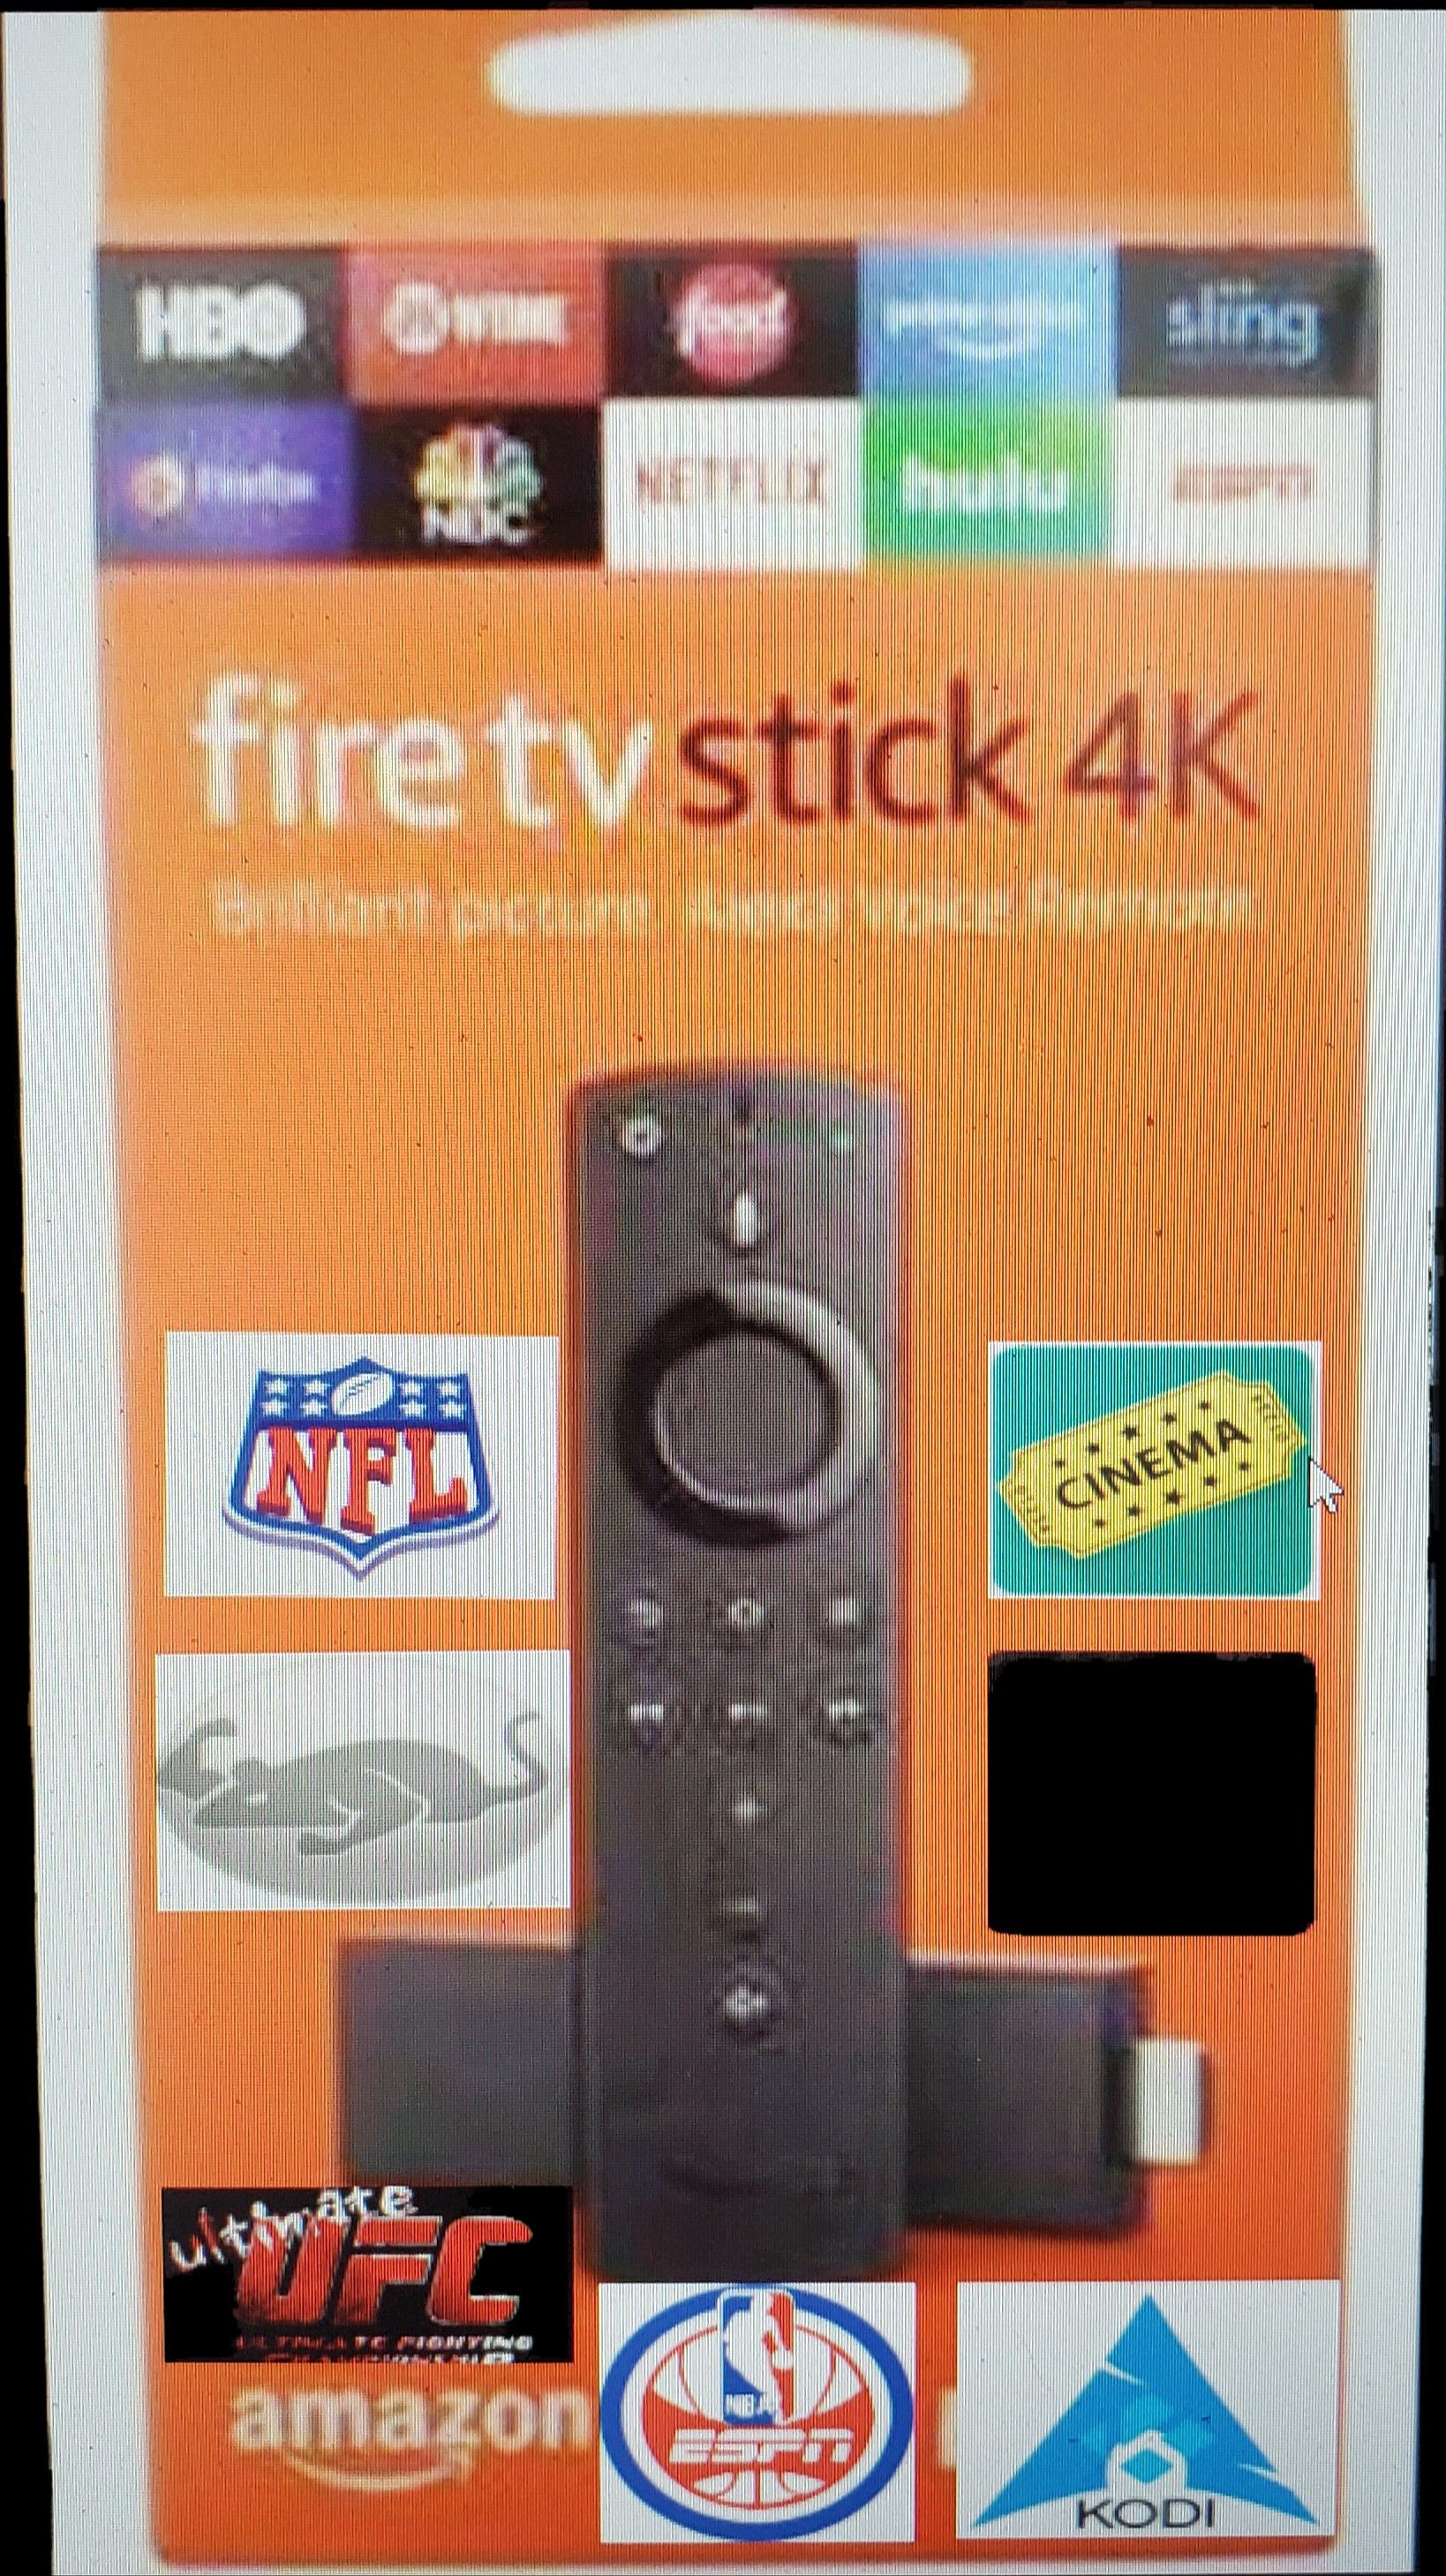 Fire tv stick 4k JB